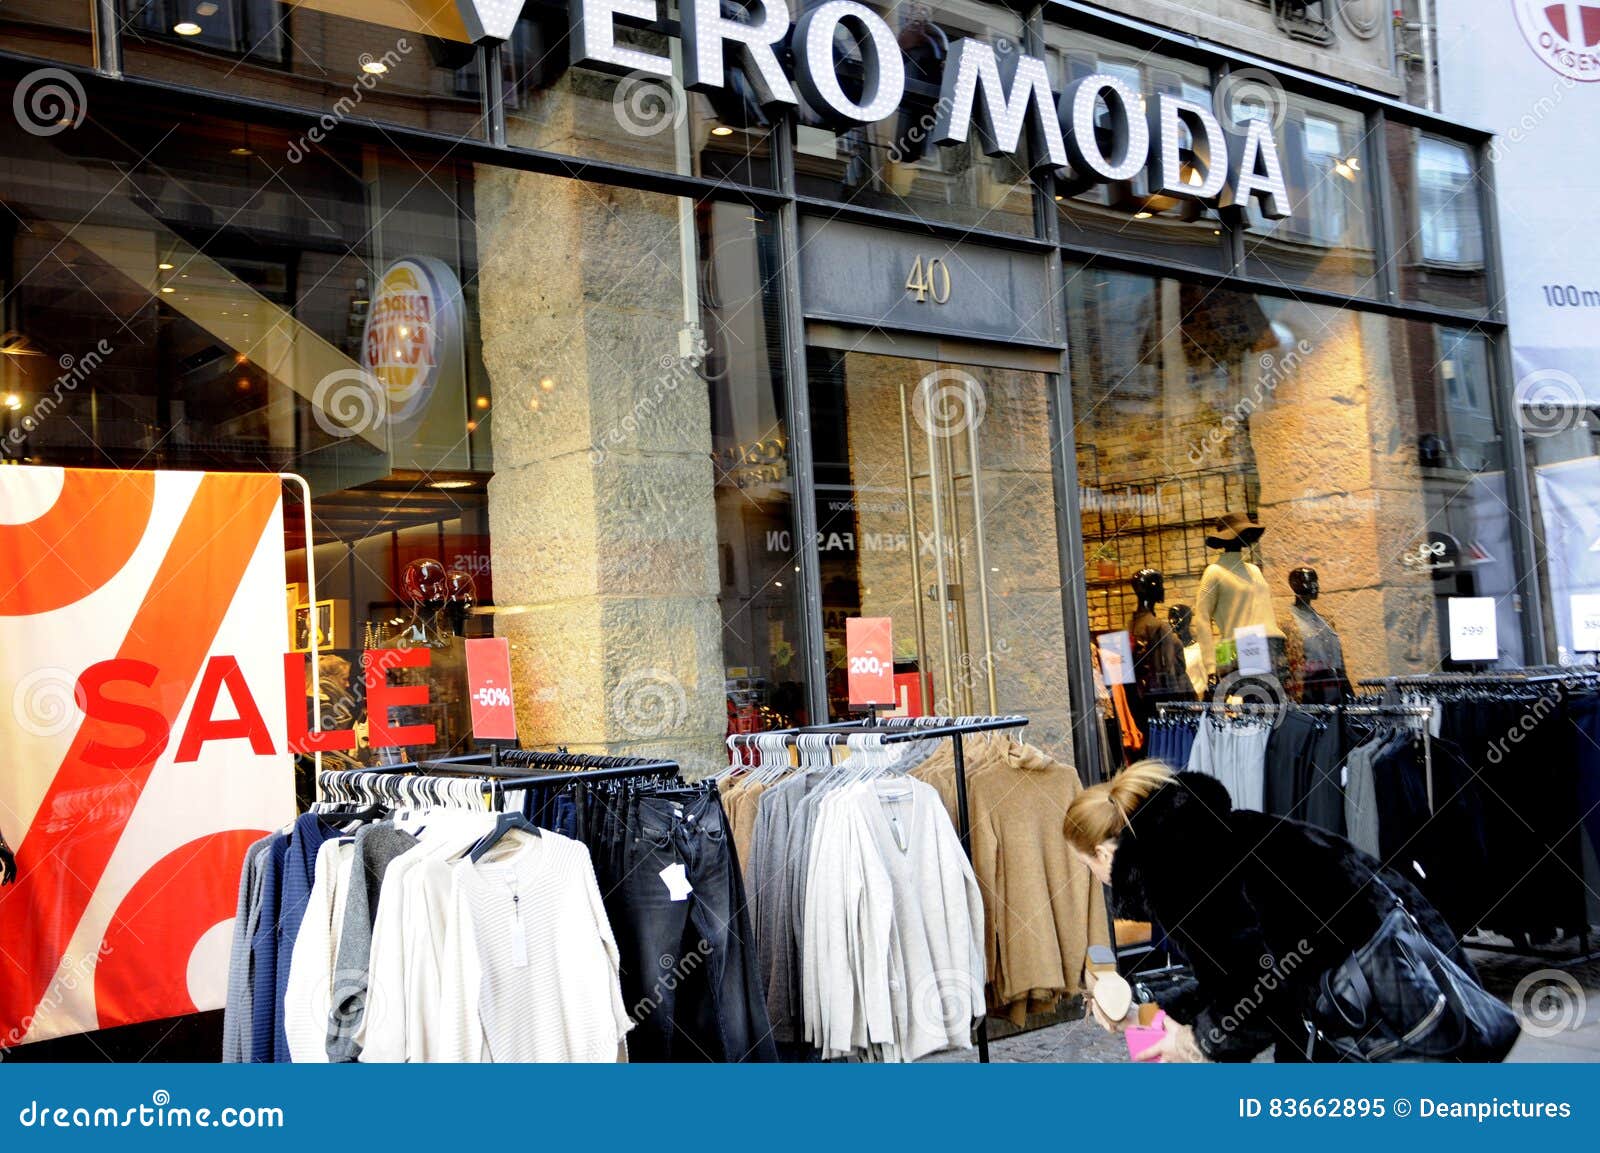 Sale at vero moda store editorial Image of finances - 83662895